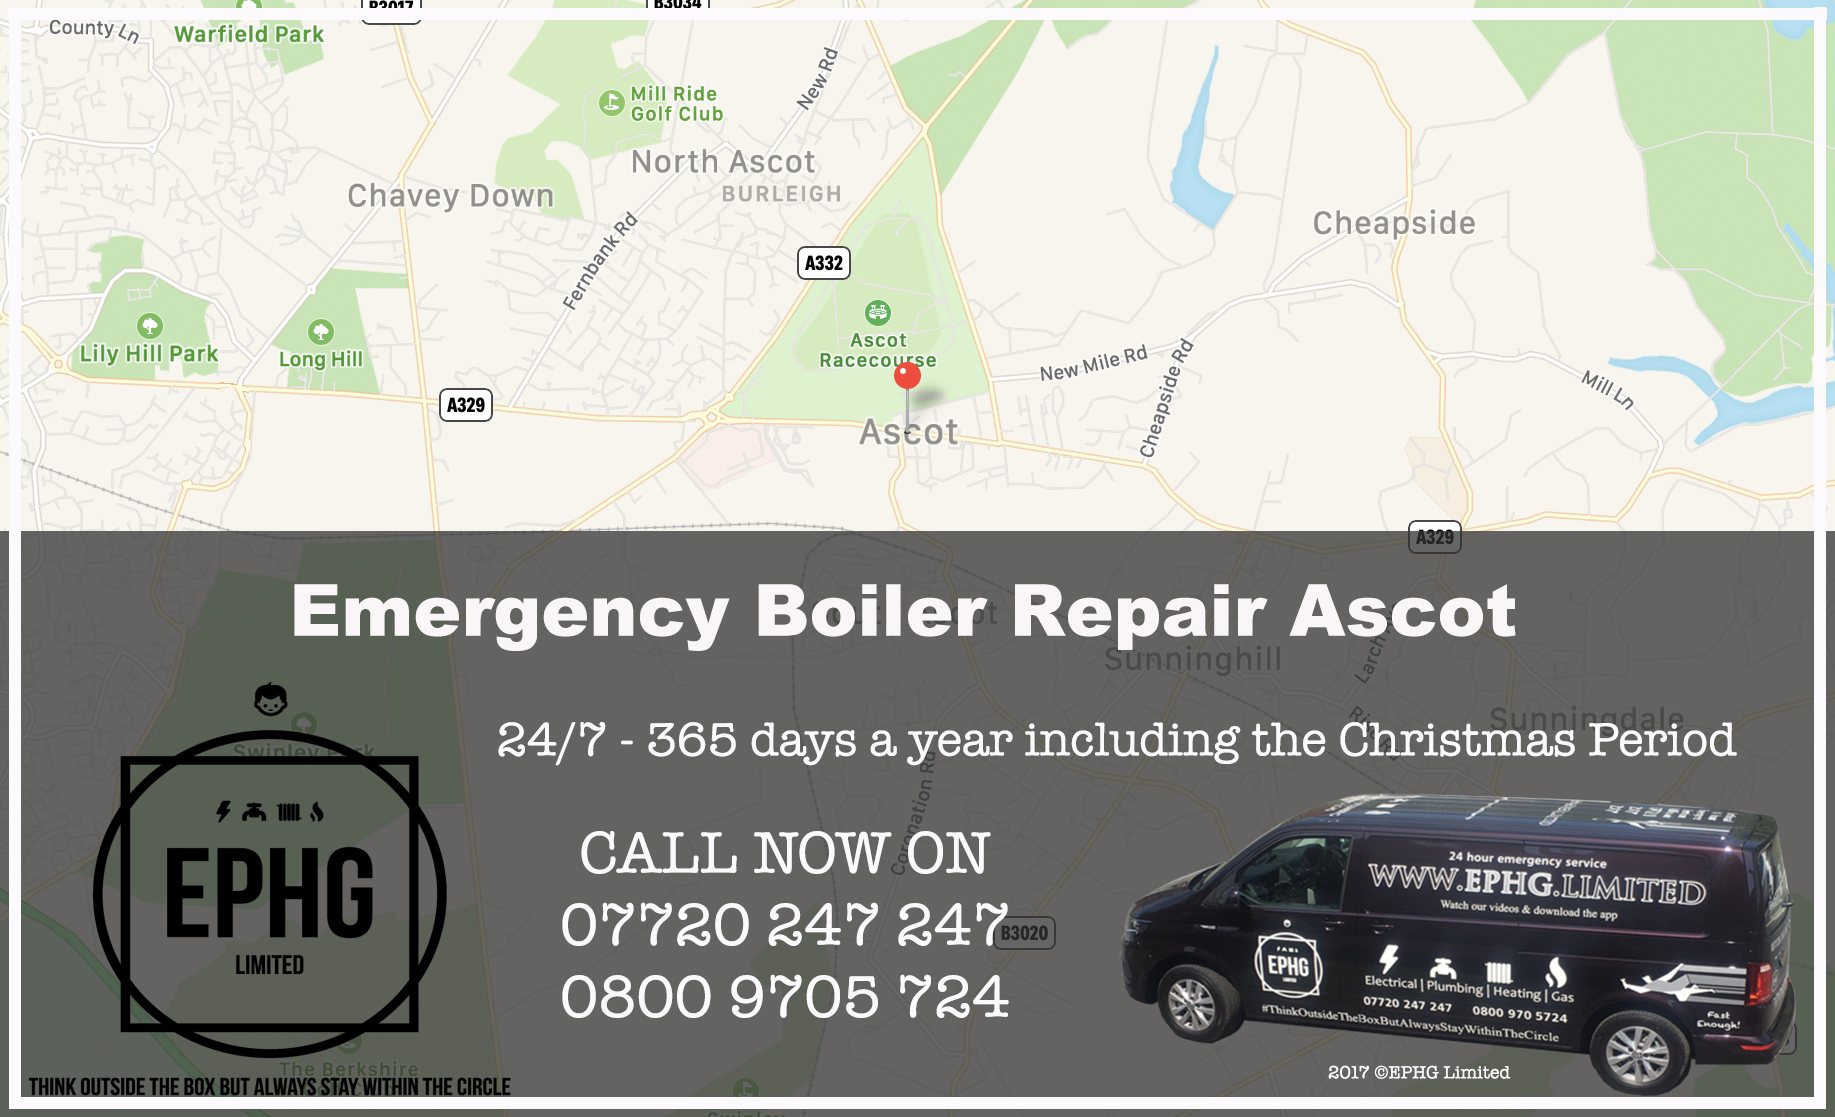 24 Hour Emergency Boiler Repair Ascot